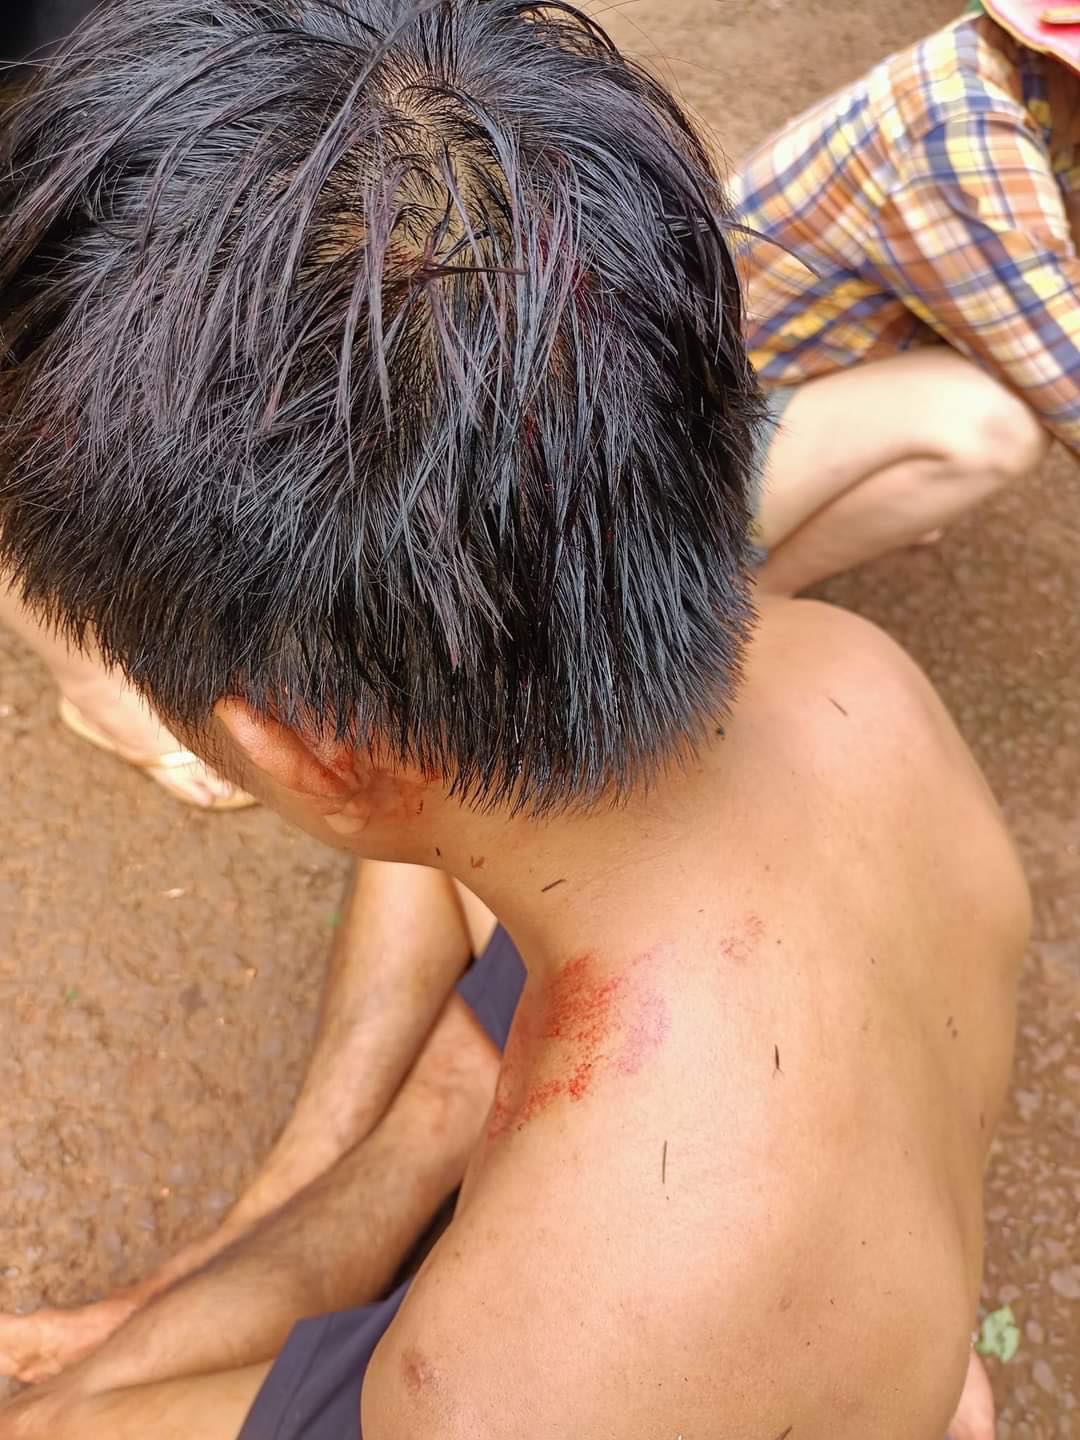 Nngay sau khi bị đánh, trên đầu và tai anh Hoàng xuất hiện nhiều vết thương tích, chảy máu